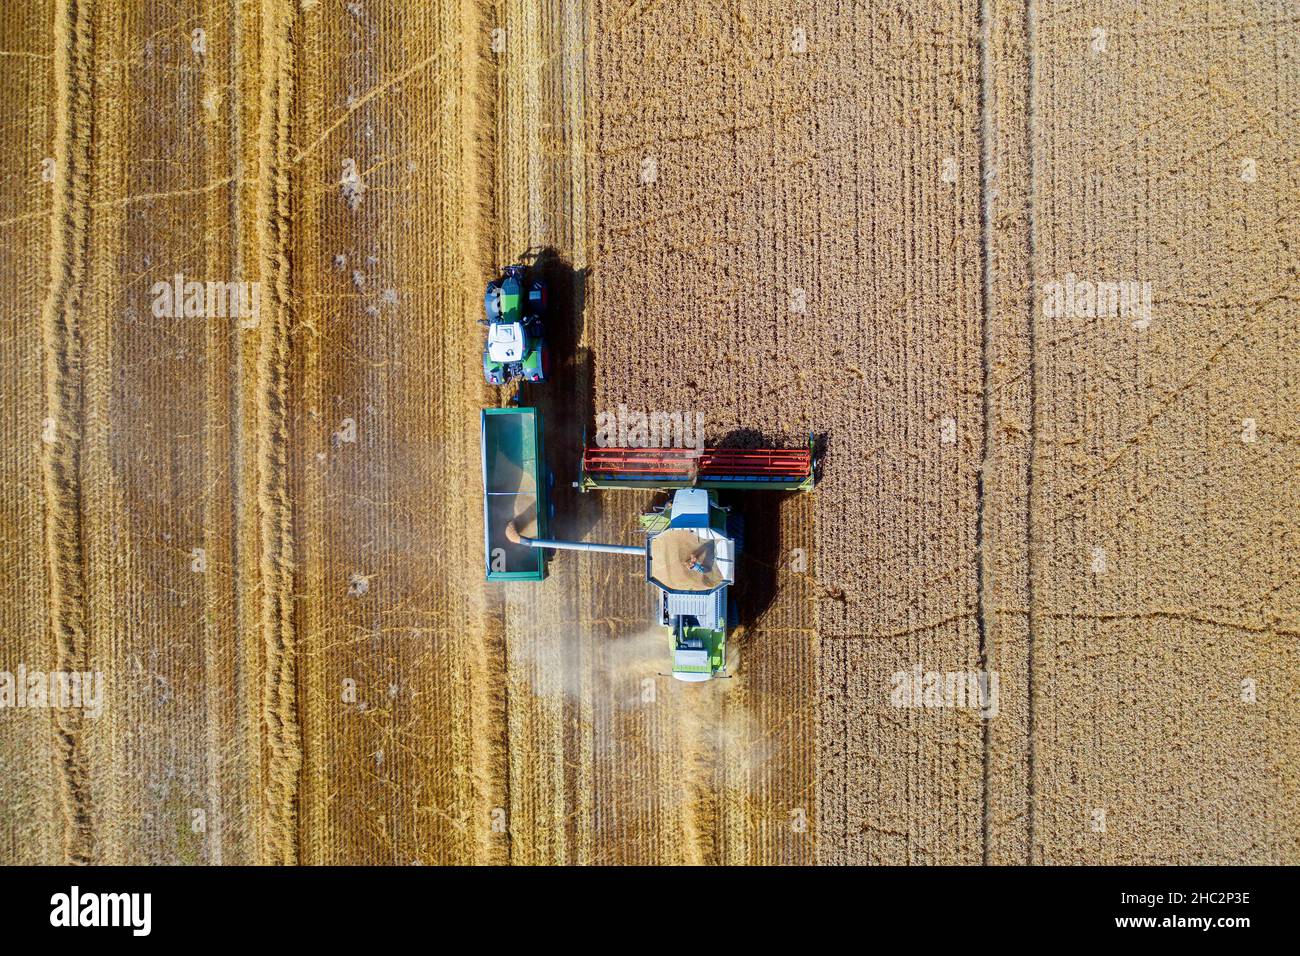 Vue aérienne de la moissonneuse-batteuse et du tracteur avec remorque récoltant du colza en été Banque D'Images